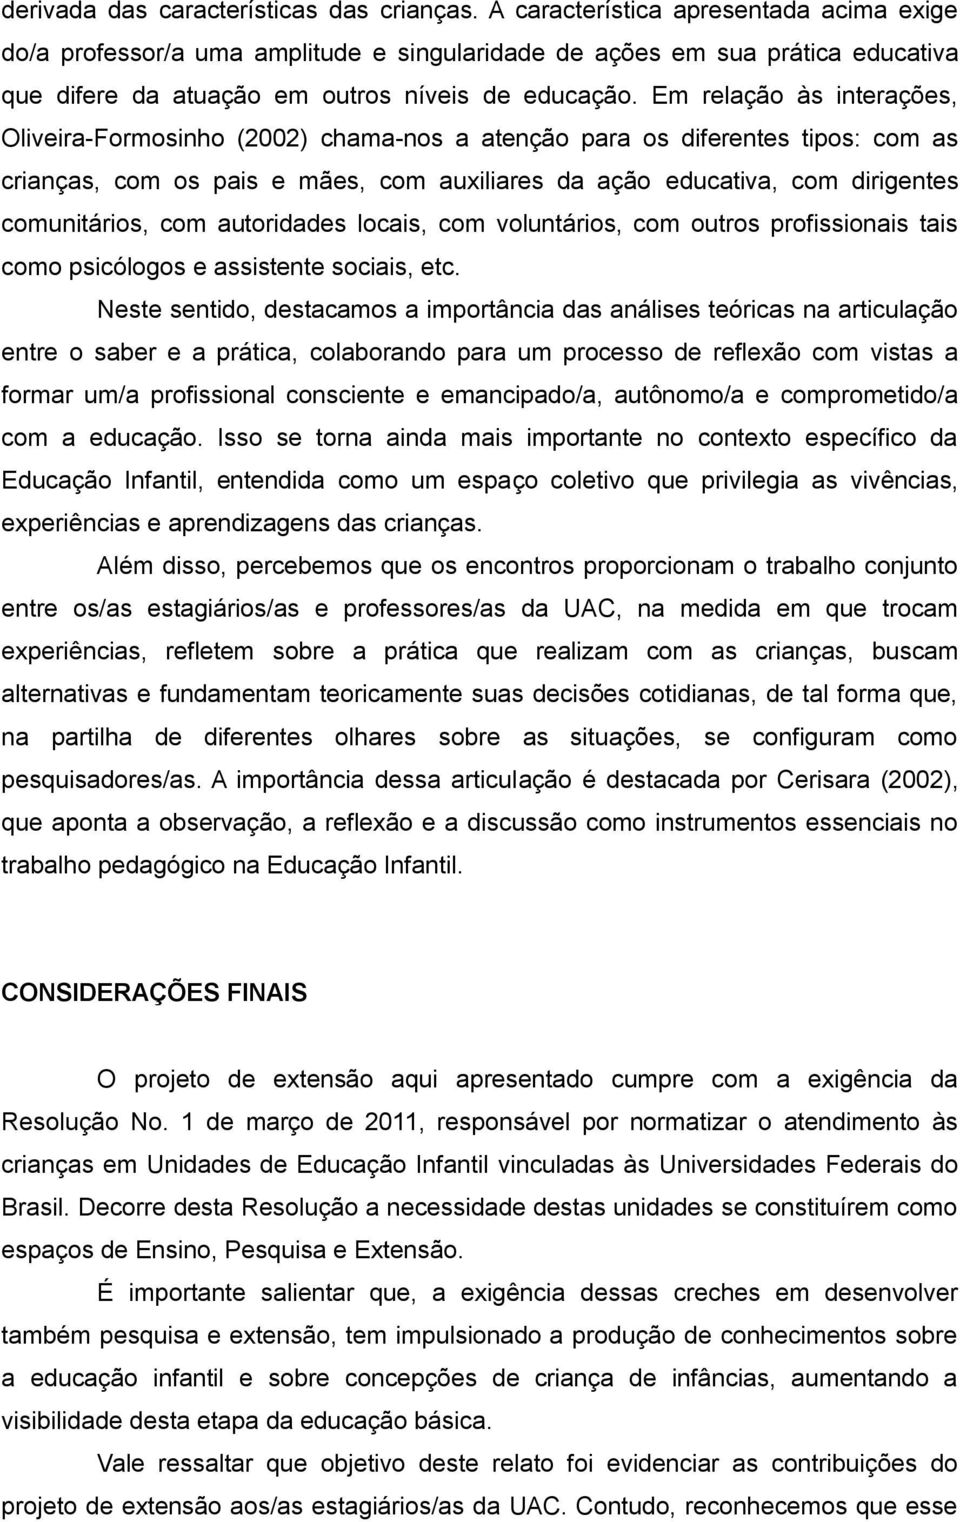 Em relação às interações, Oliveira-Formosinho (2002) chama-nos a atenção para os diferentes tipos: com as crianças, com os pais e mães, com auxiliares da ação educativa, com dirigentes comunitários,